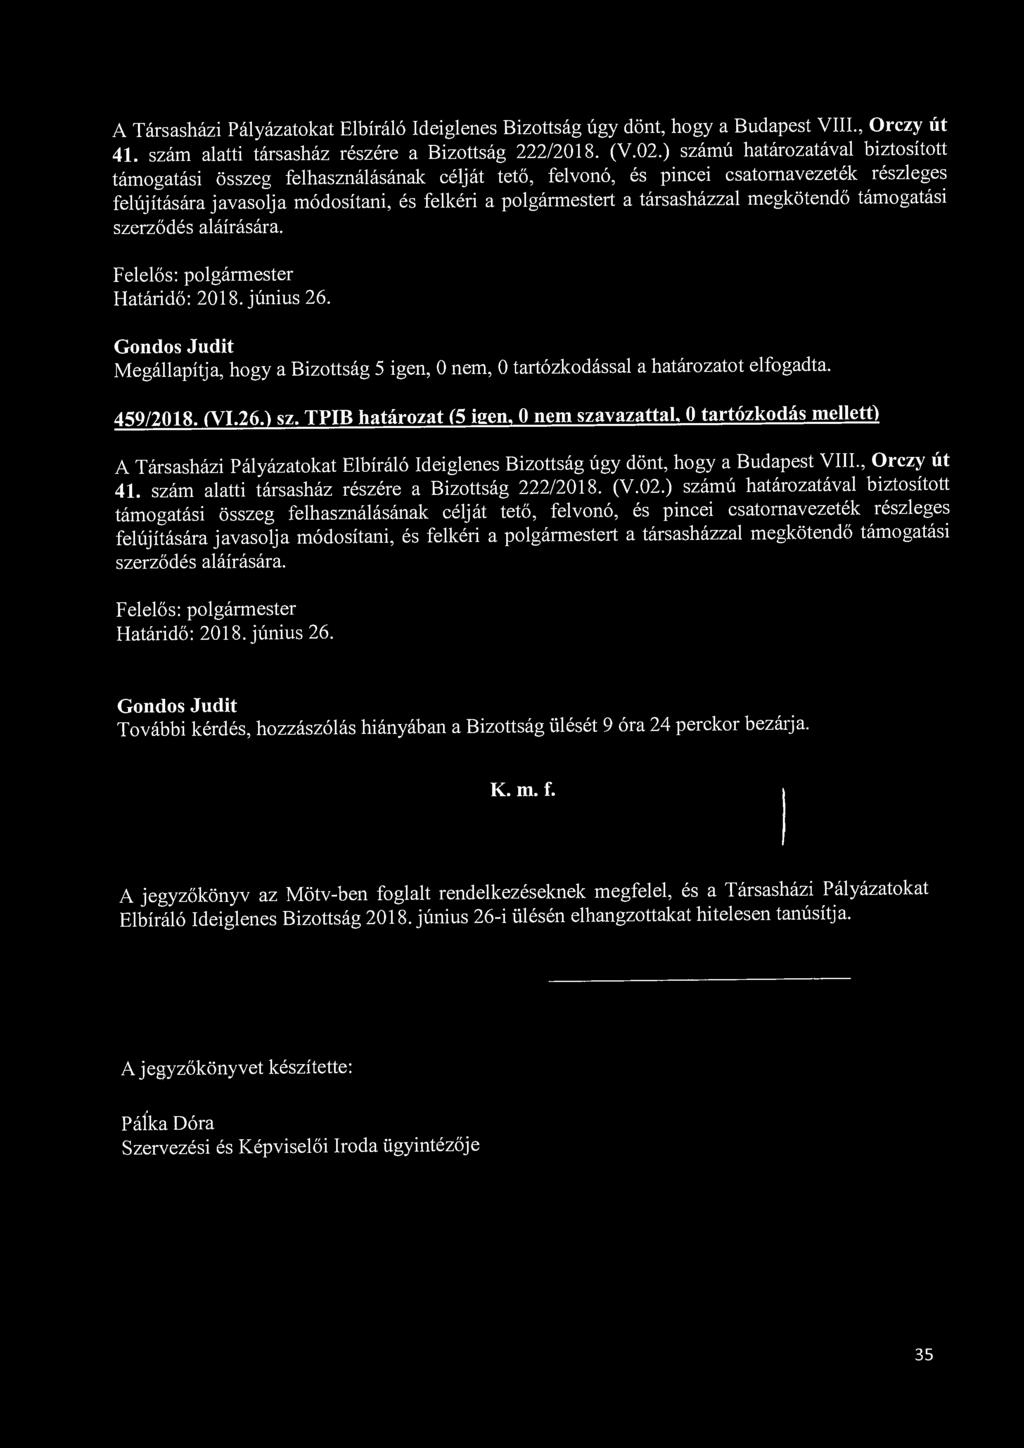 A Társasházi Pályázatokat Elbíráló Ideiglenes Bizottság úgy dönt, hogy a Budapest VIII., Orczy út 41. szám alatti társasház részére a Bizottság 222/2018. (V.02.